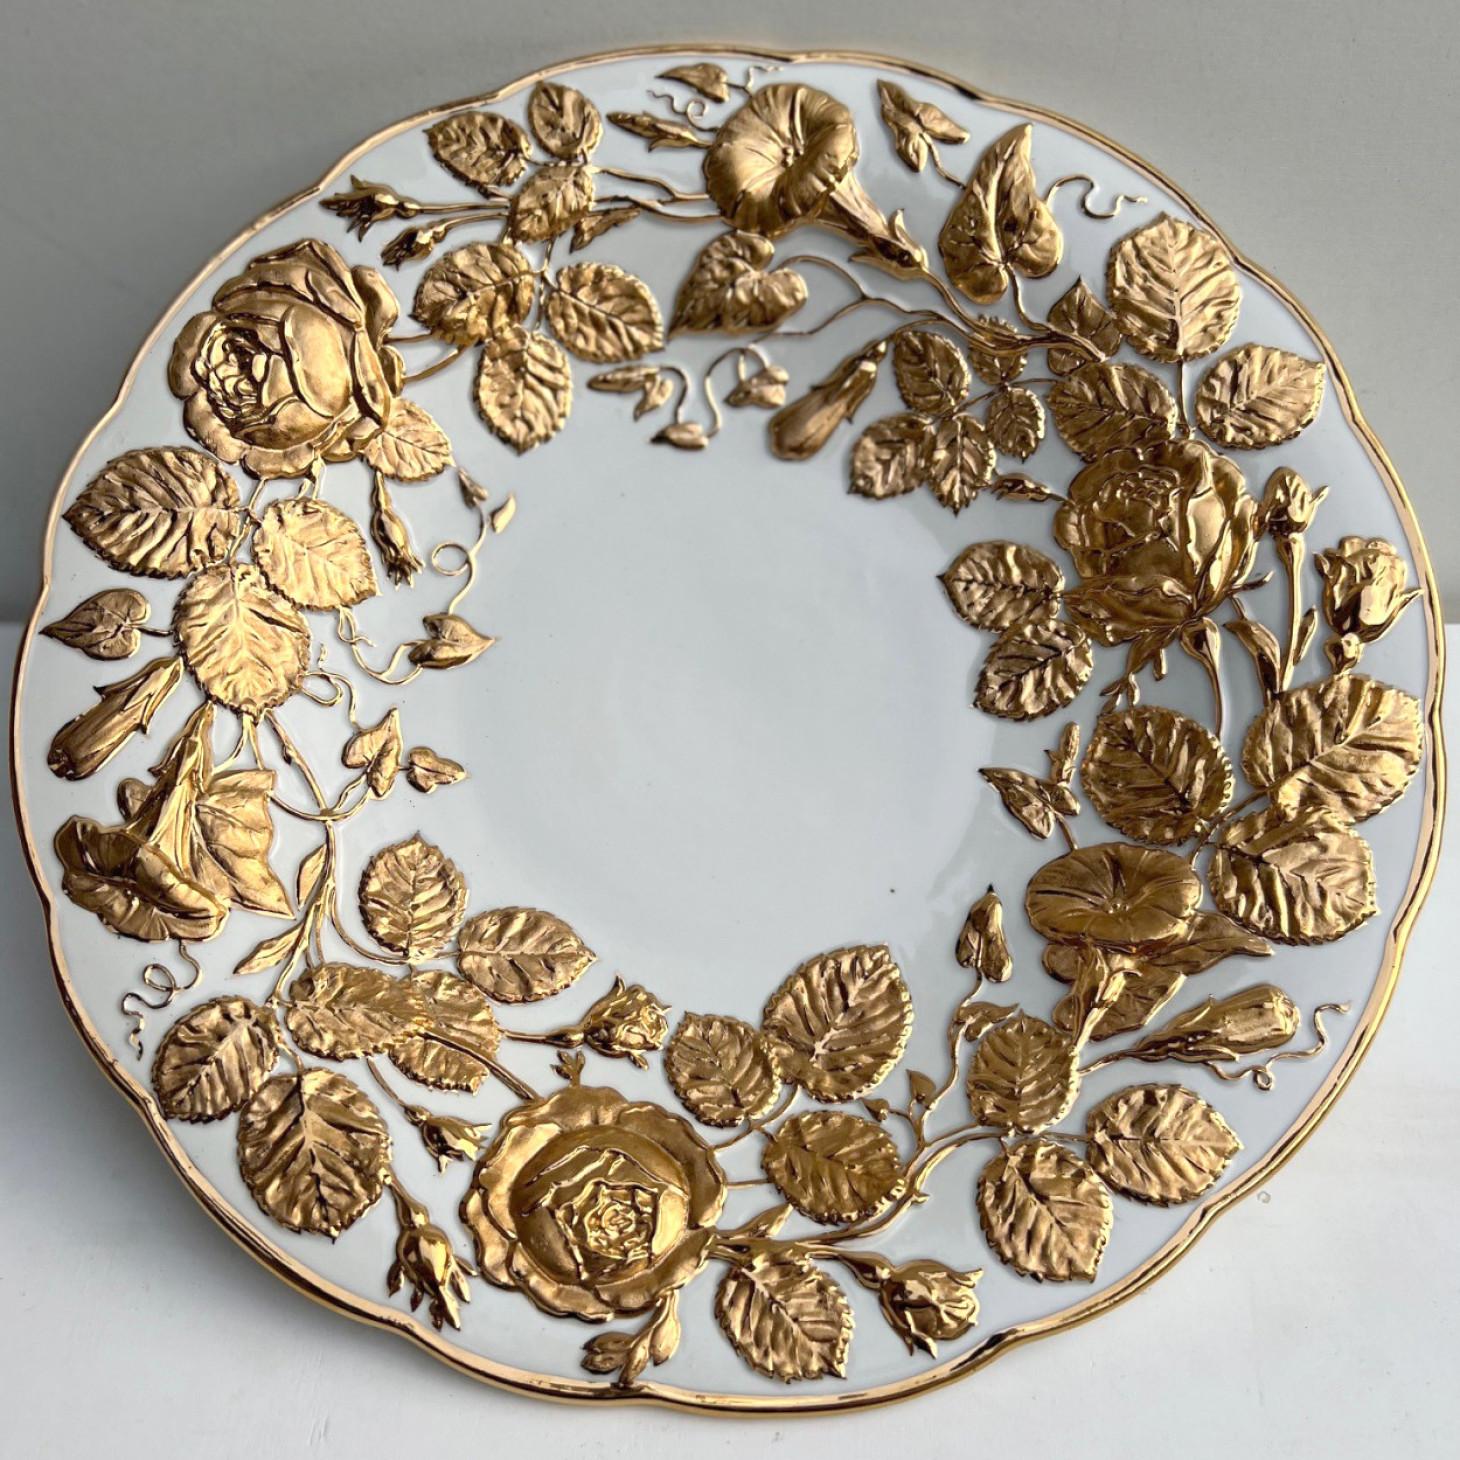 Assiette en porcelaine avec un riche décor doré, fabriquée par Meissen Porcelain, Allemagne, vers 1950.

C'est la première manufacture de porcelaine en Europe à produire de la véritable porcelaine en dehors de l'Asie.

La plaque est en excellent